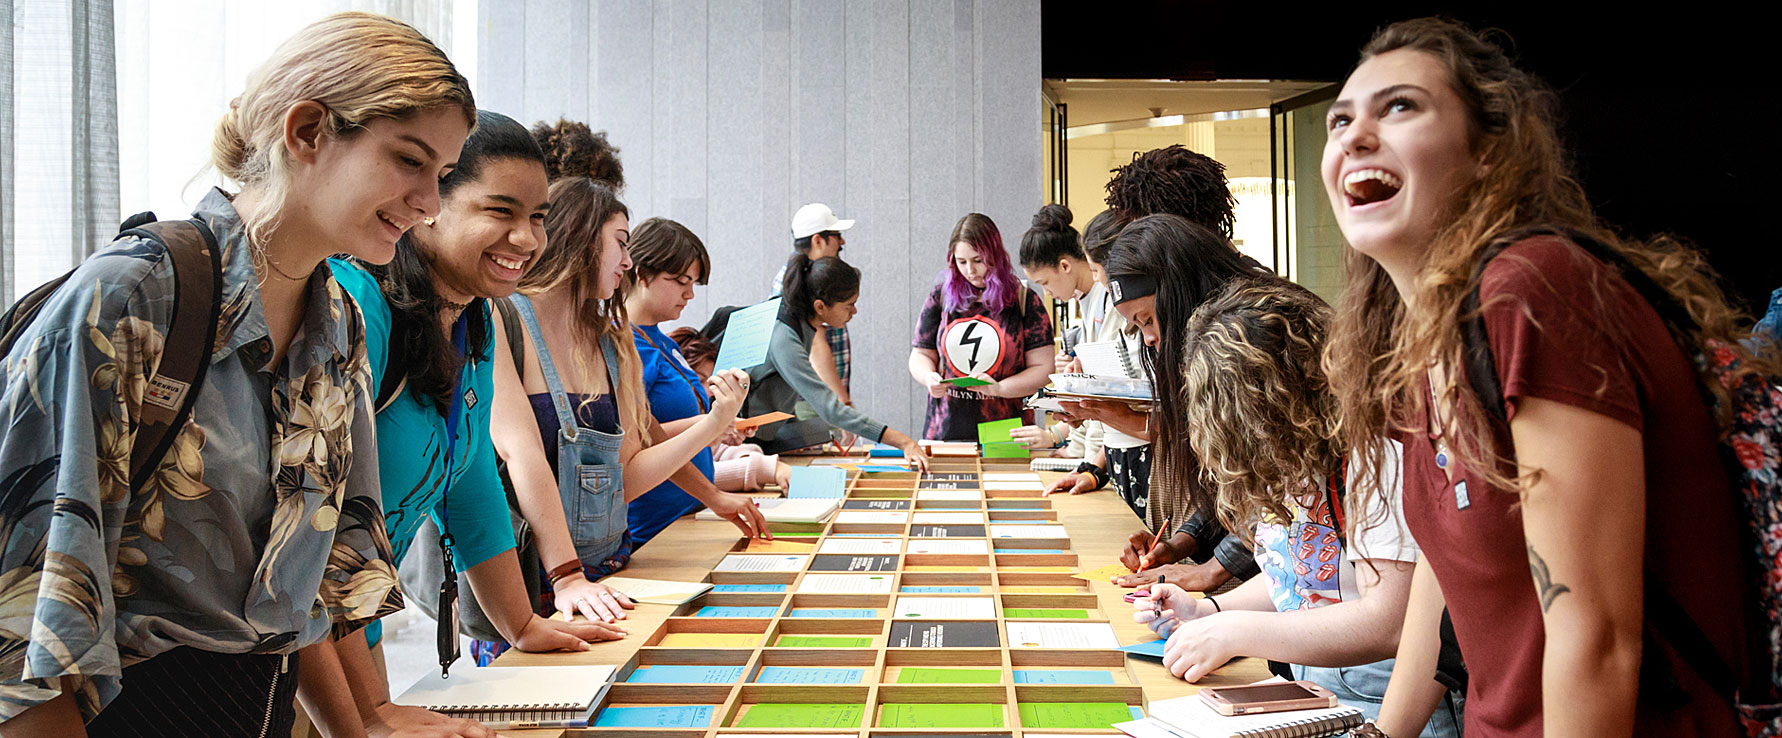 Les personnes bénéficiant de la section Future City Lab du New York à son exposition Core au Musée de la ville de New York